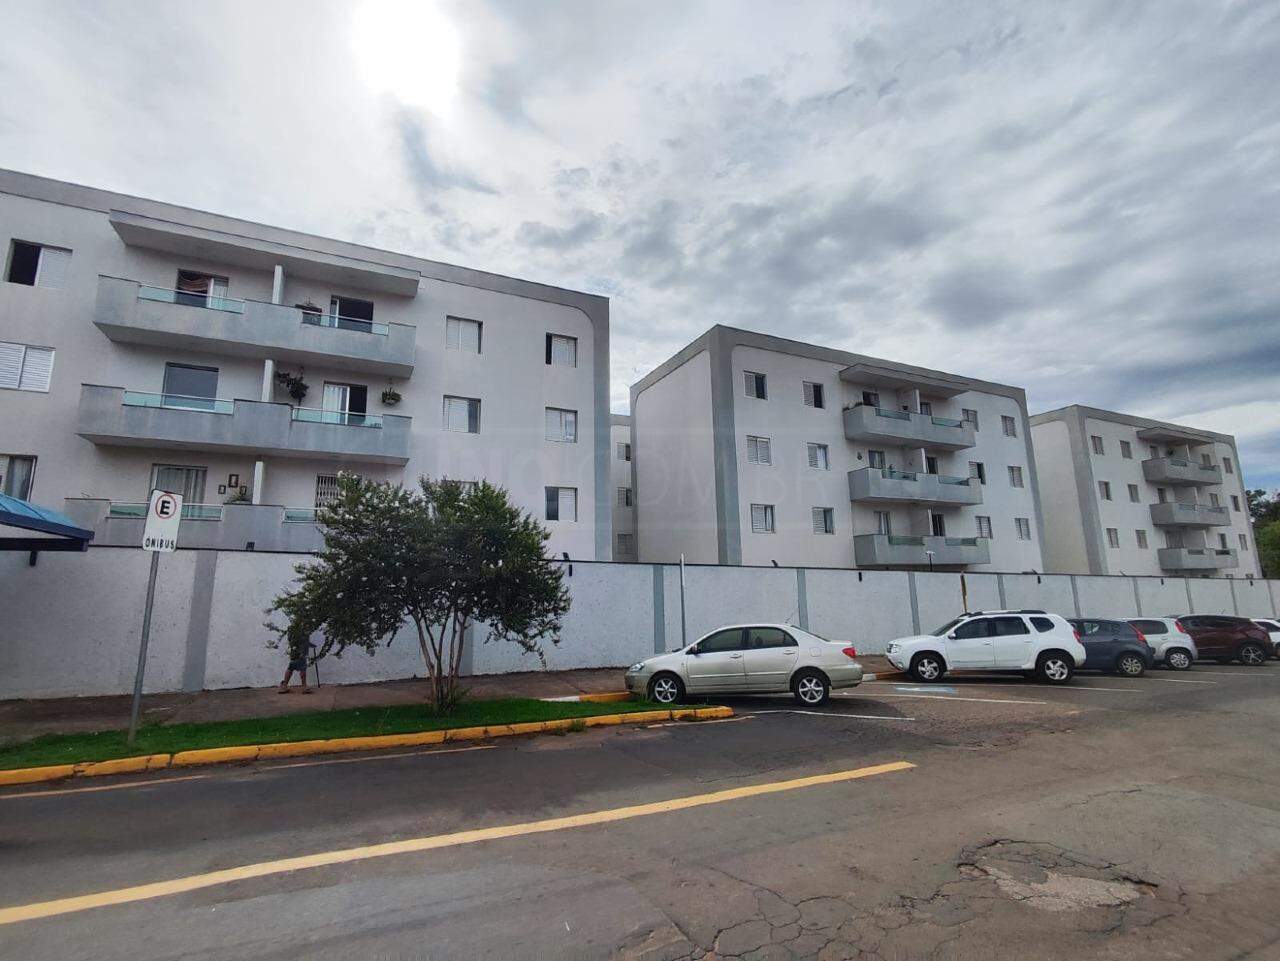 Apartamento à venda, 3 quartos, sendo 1 suíte, 2 vagas, no bairro Centro em Rio das Pedras - SP